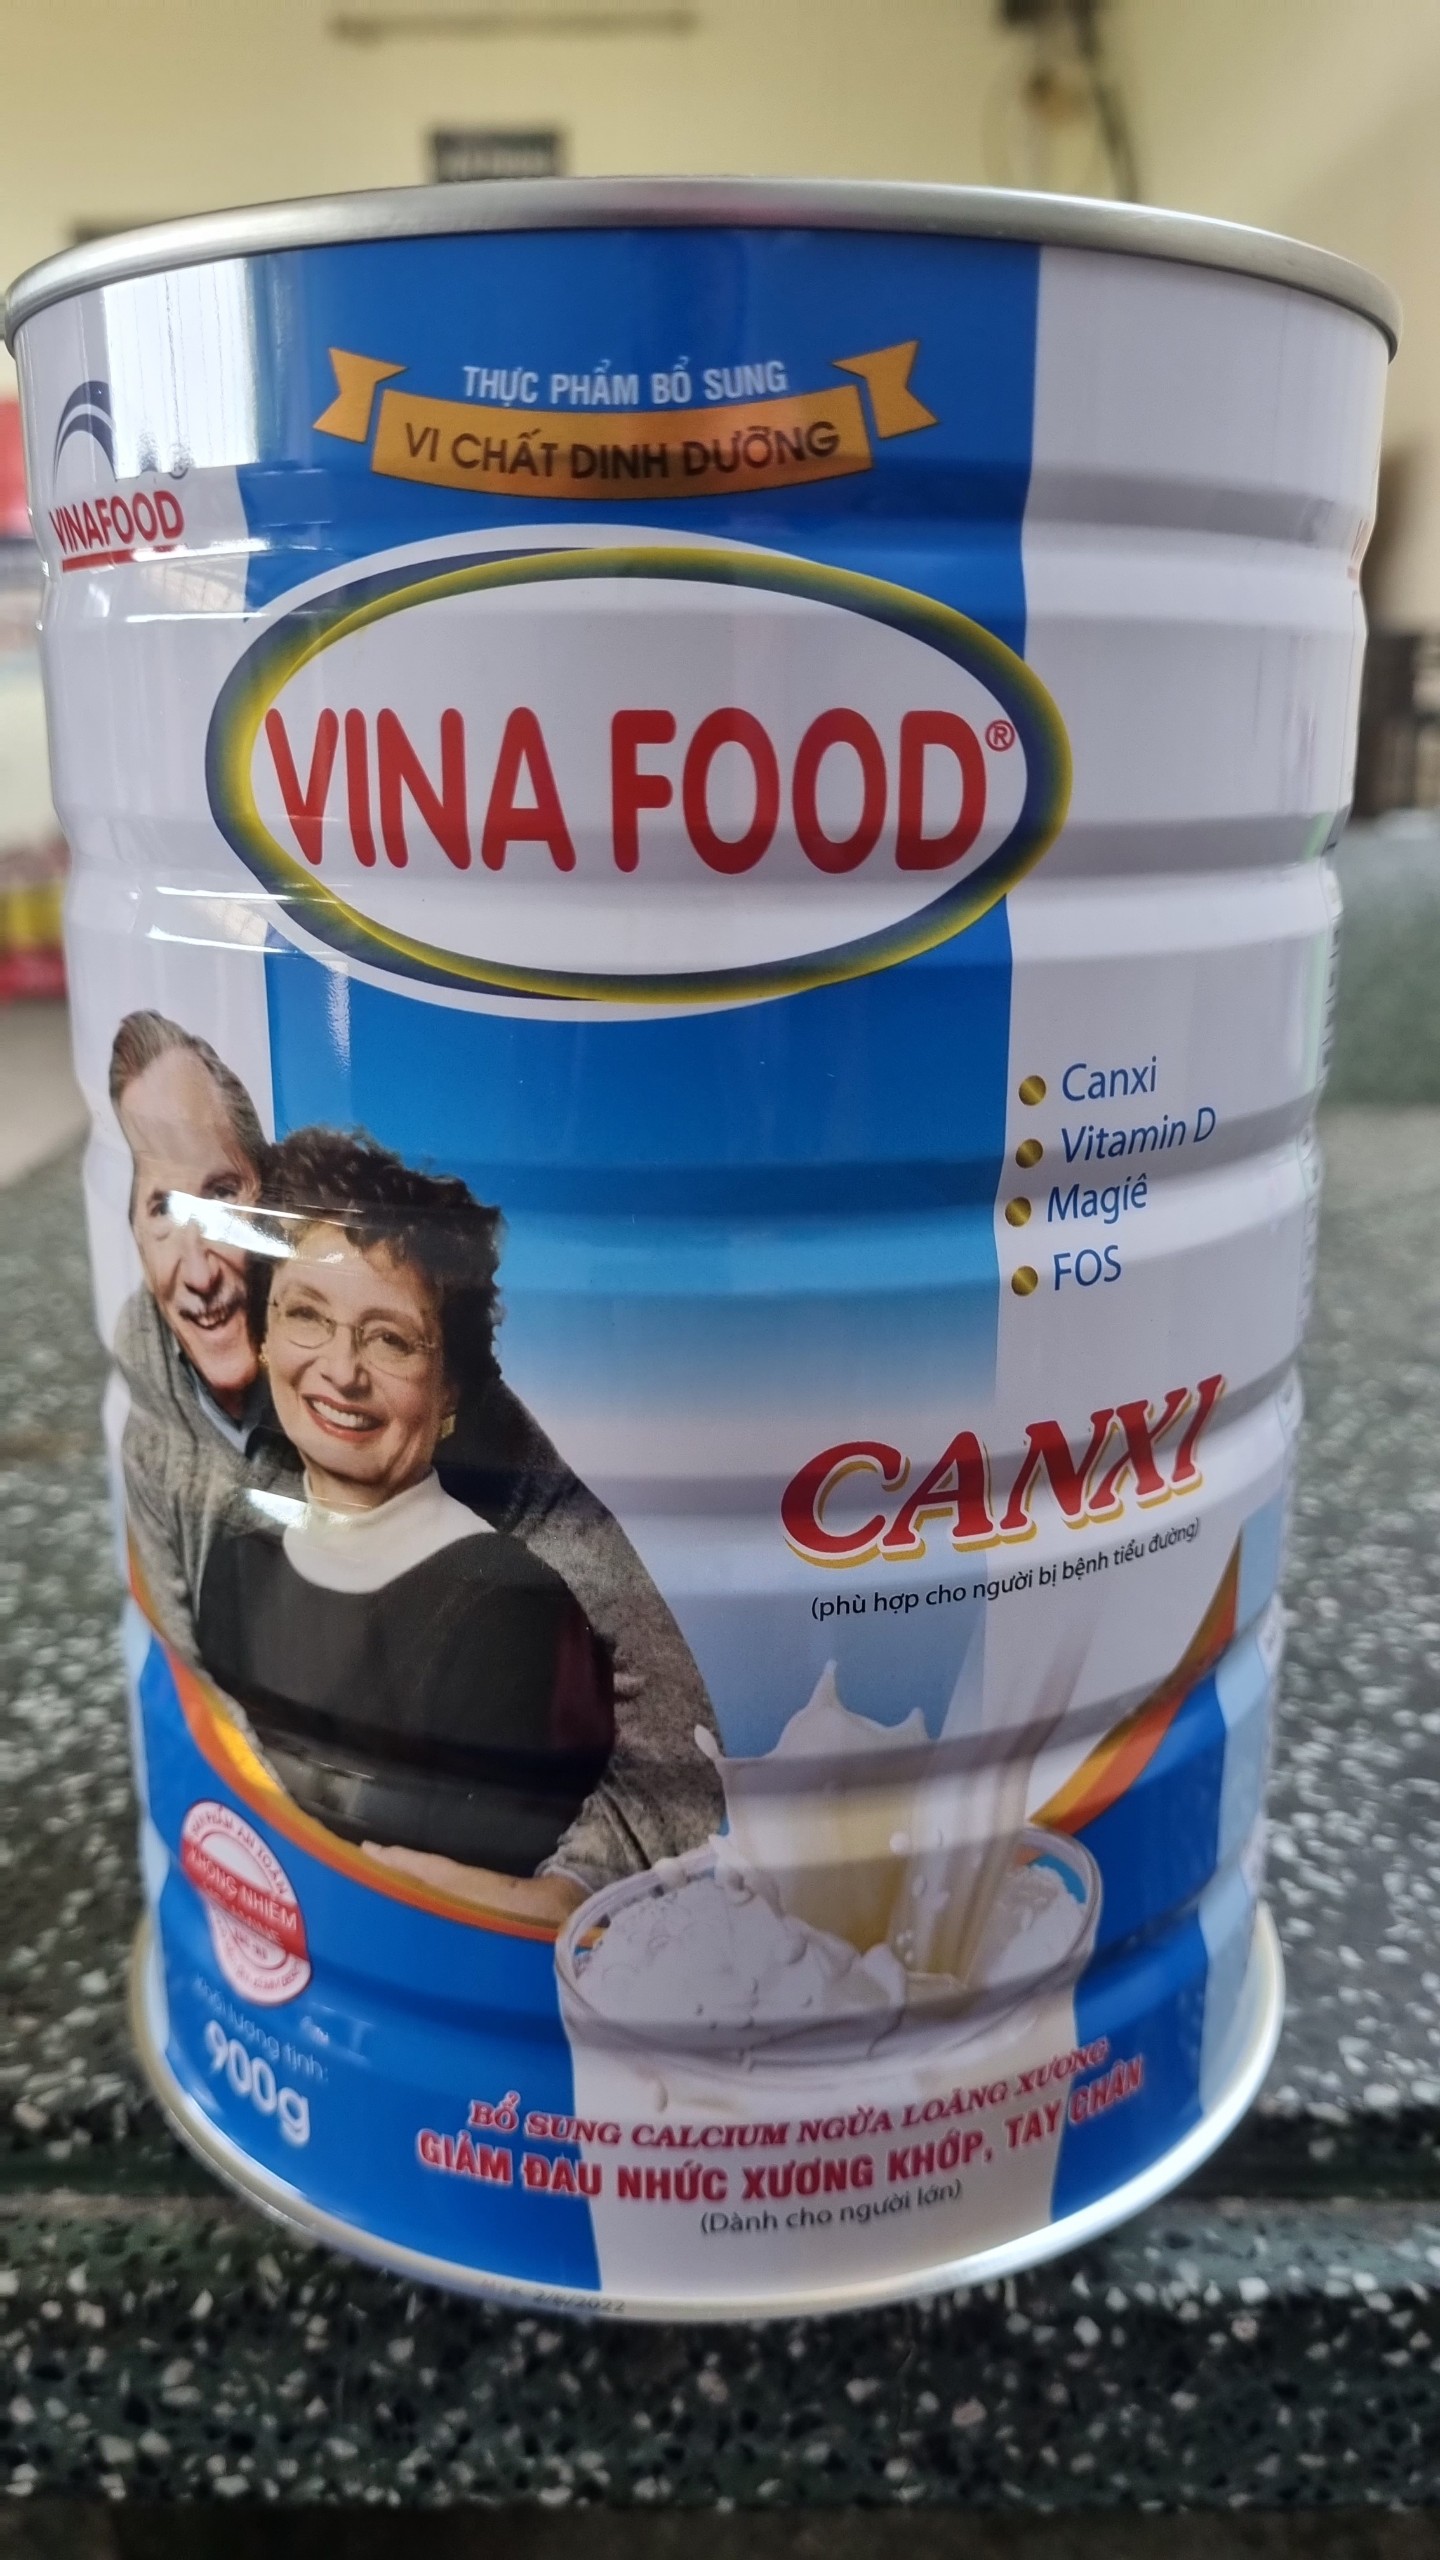 Sữa Bột Vinafood_CANXI Lon 900g Dành Cho Người Lớn tuổi, Bổ Sung Canxi Cho